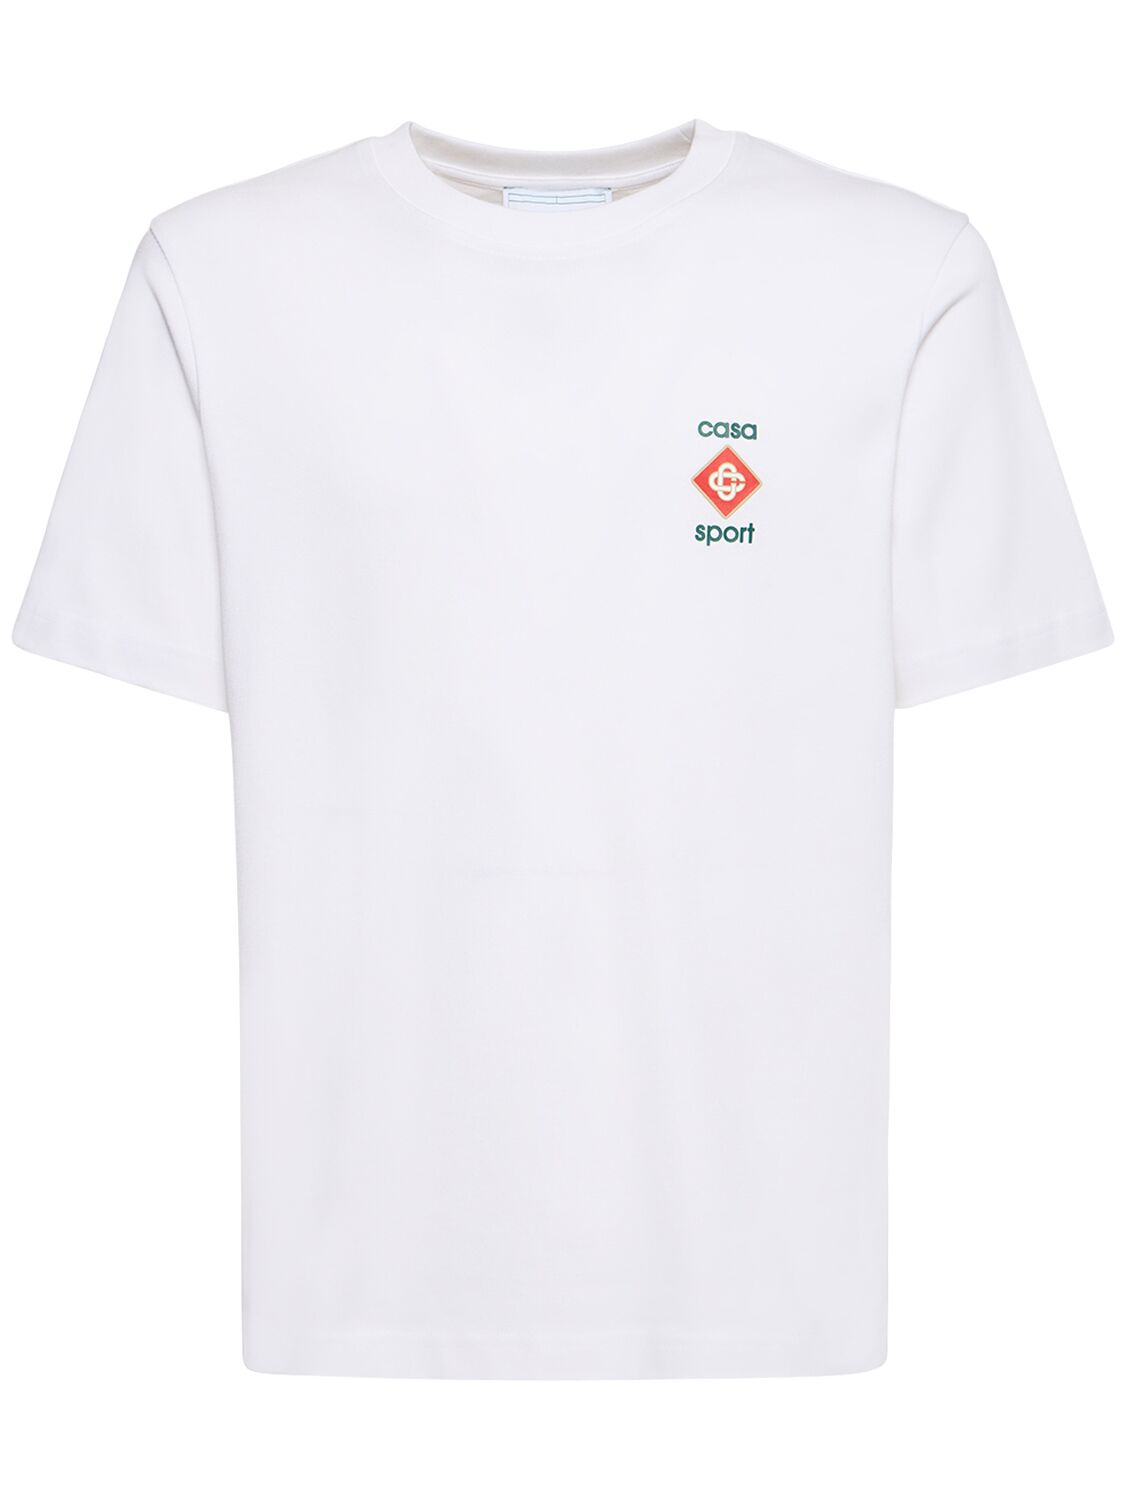 Casa Sport Organic Cotton T-shirt